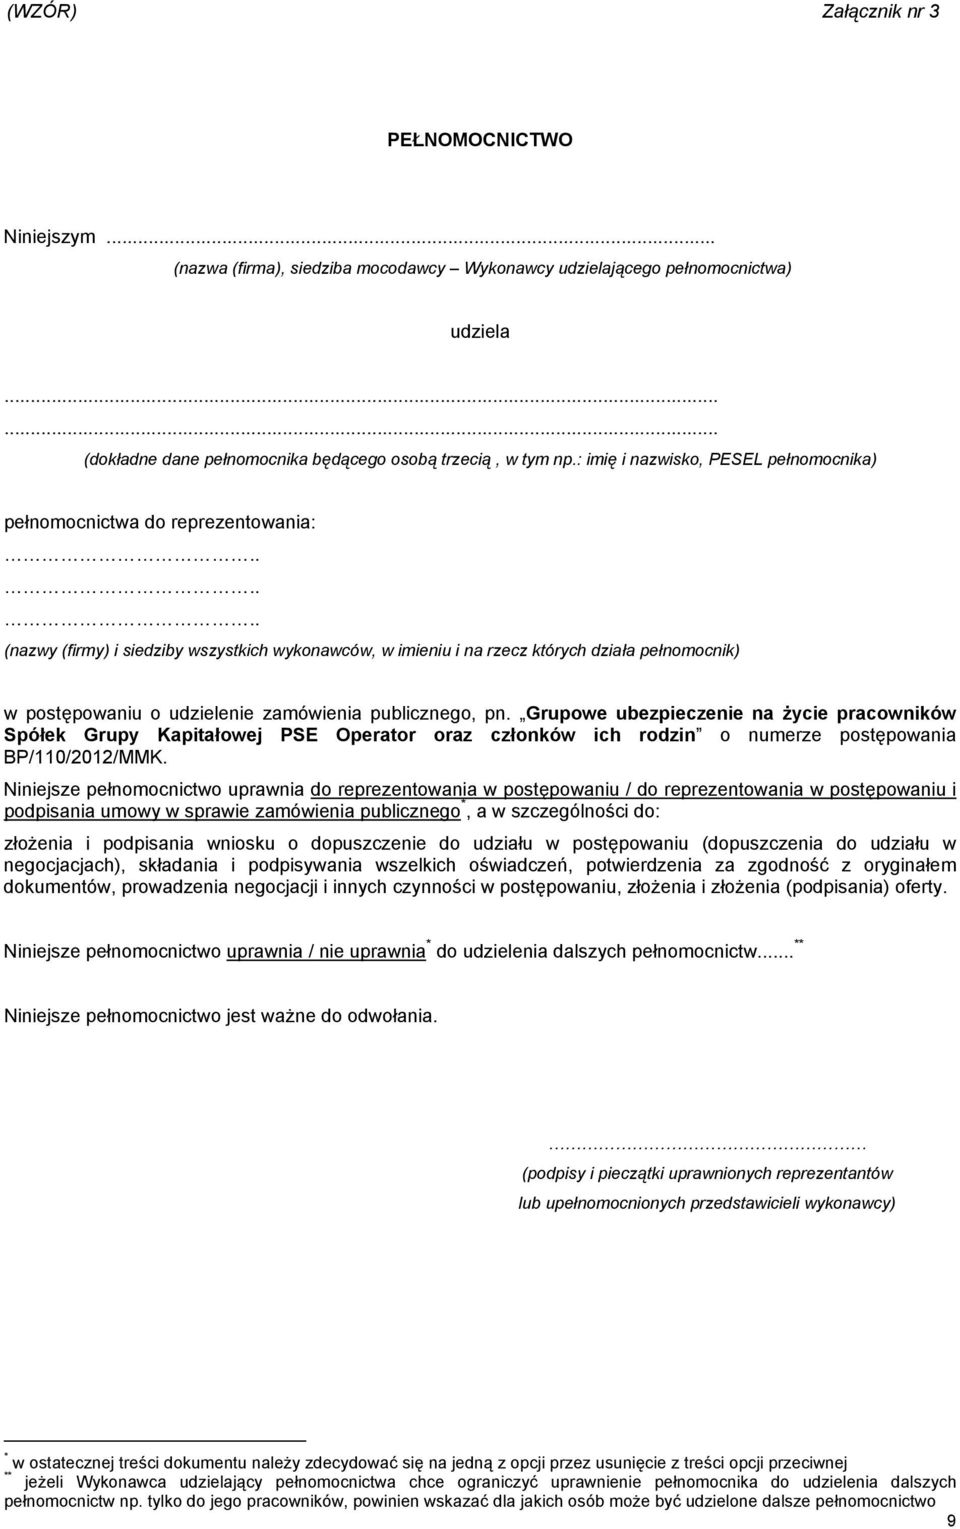 Instrukcja dla wykonawców składających wniosek o dopuszczenie do udziału w  postępowaniu w trybie negocjacji z ogłoszeniem - PDF Darmowe pobieranie